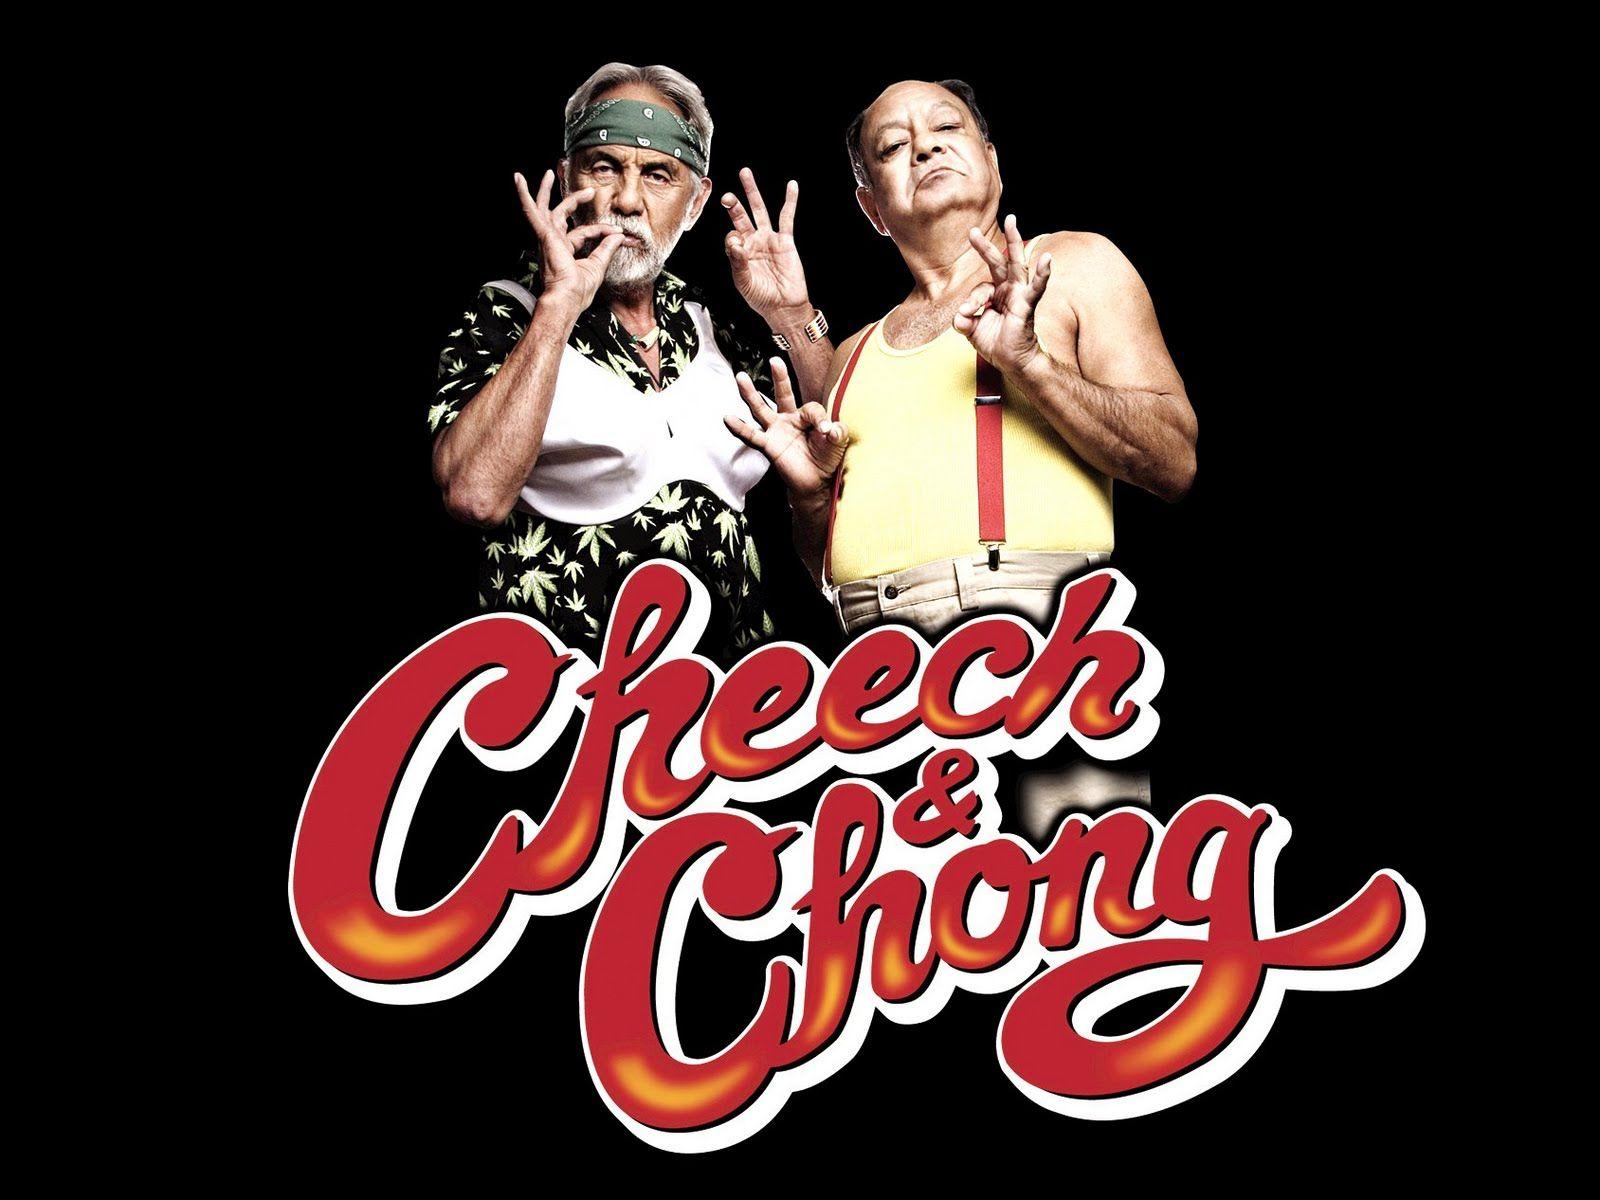 Cheech And Chong Wallpaper.com